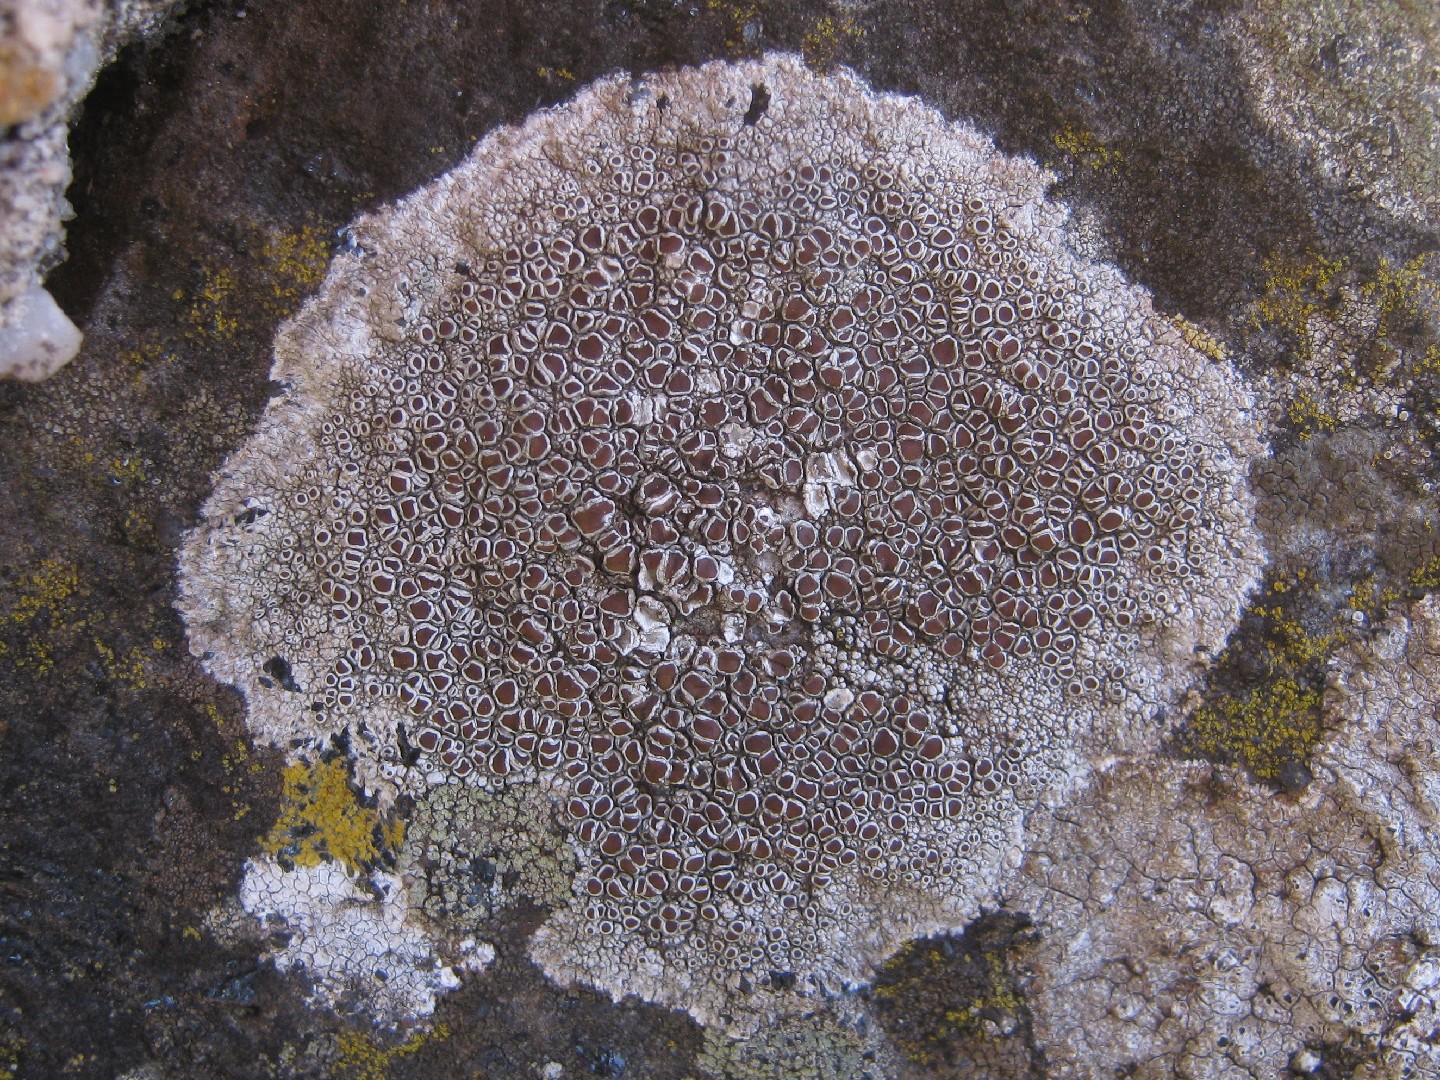 Rim lichen